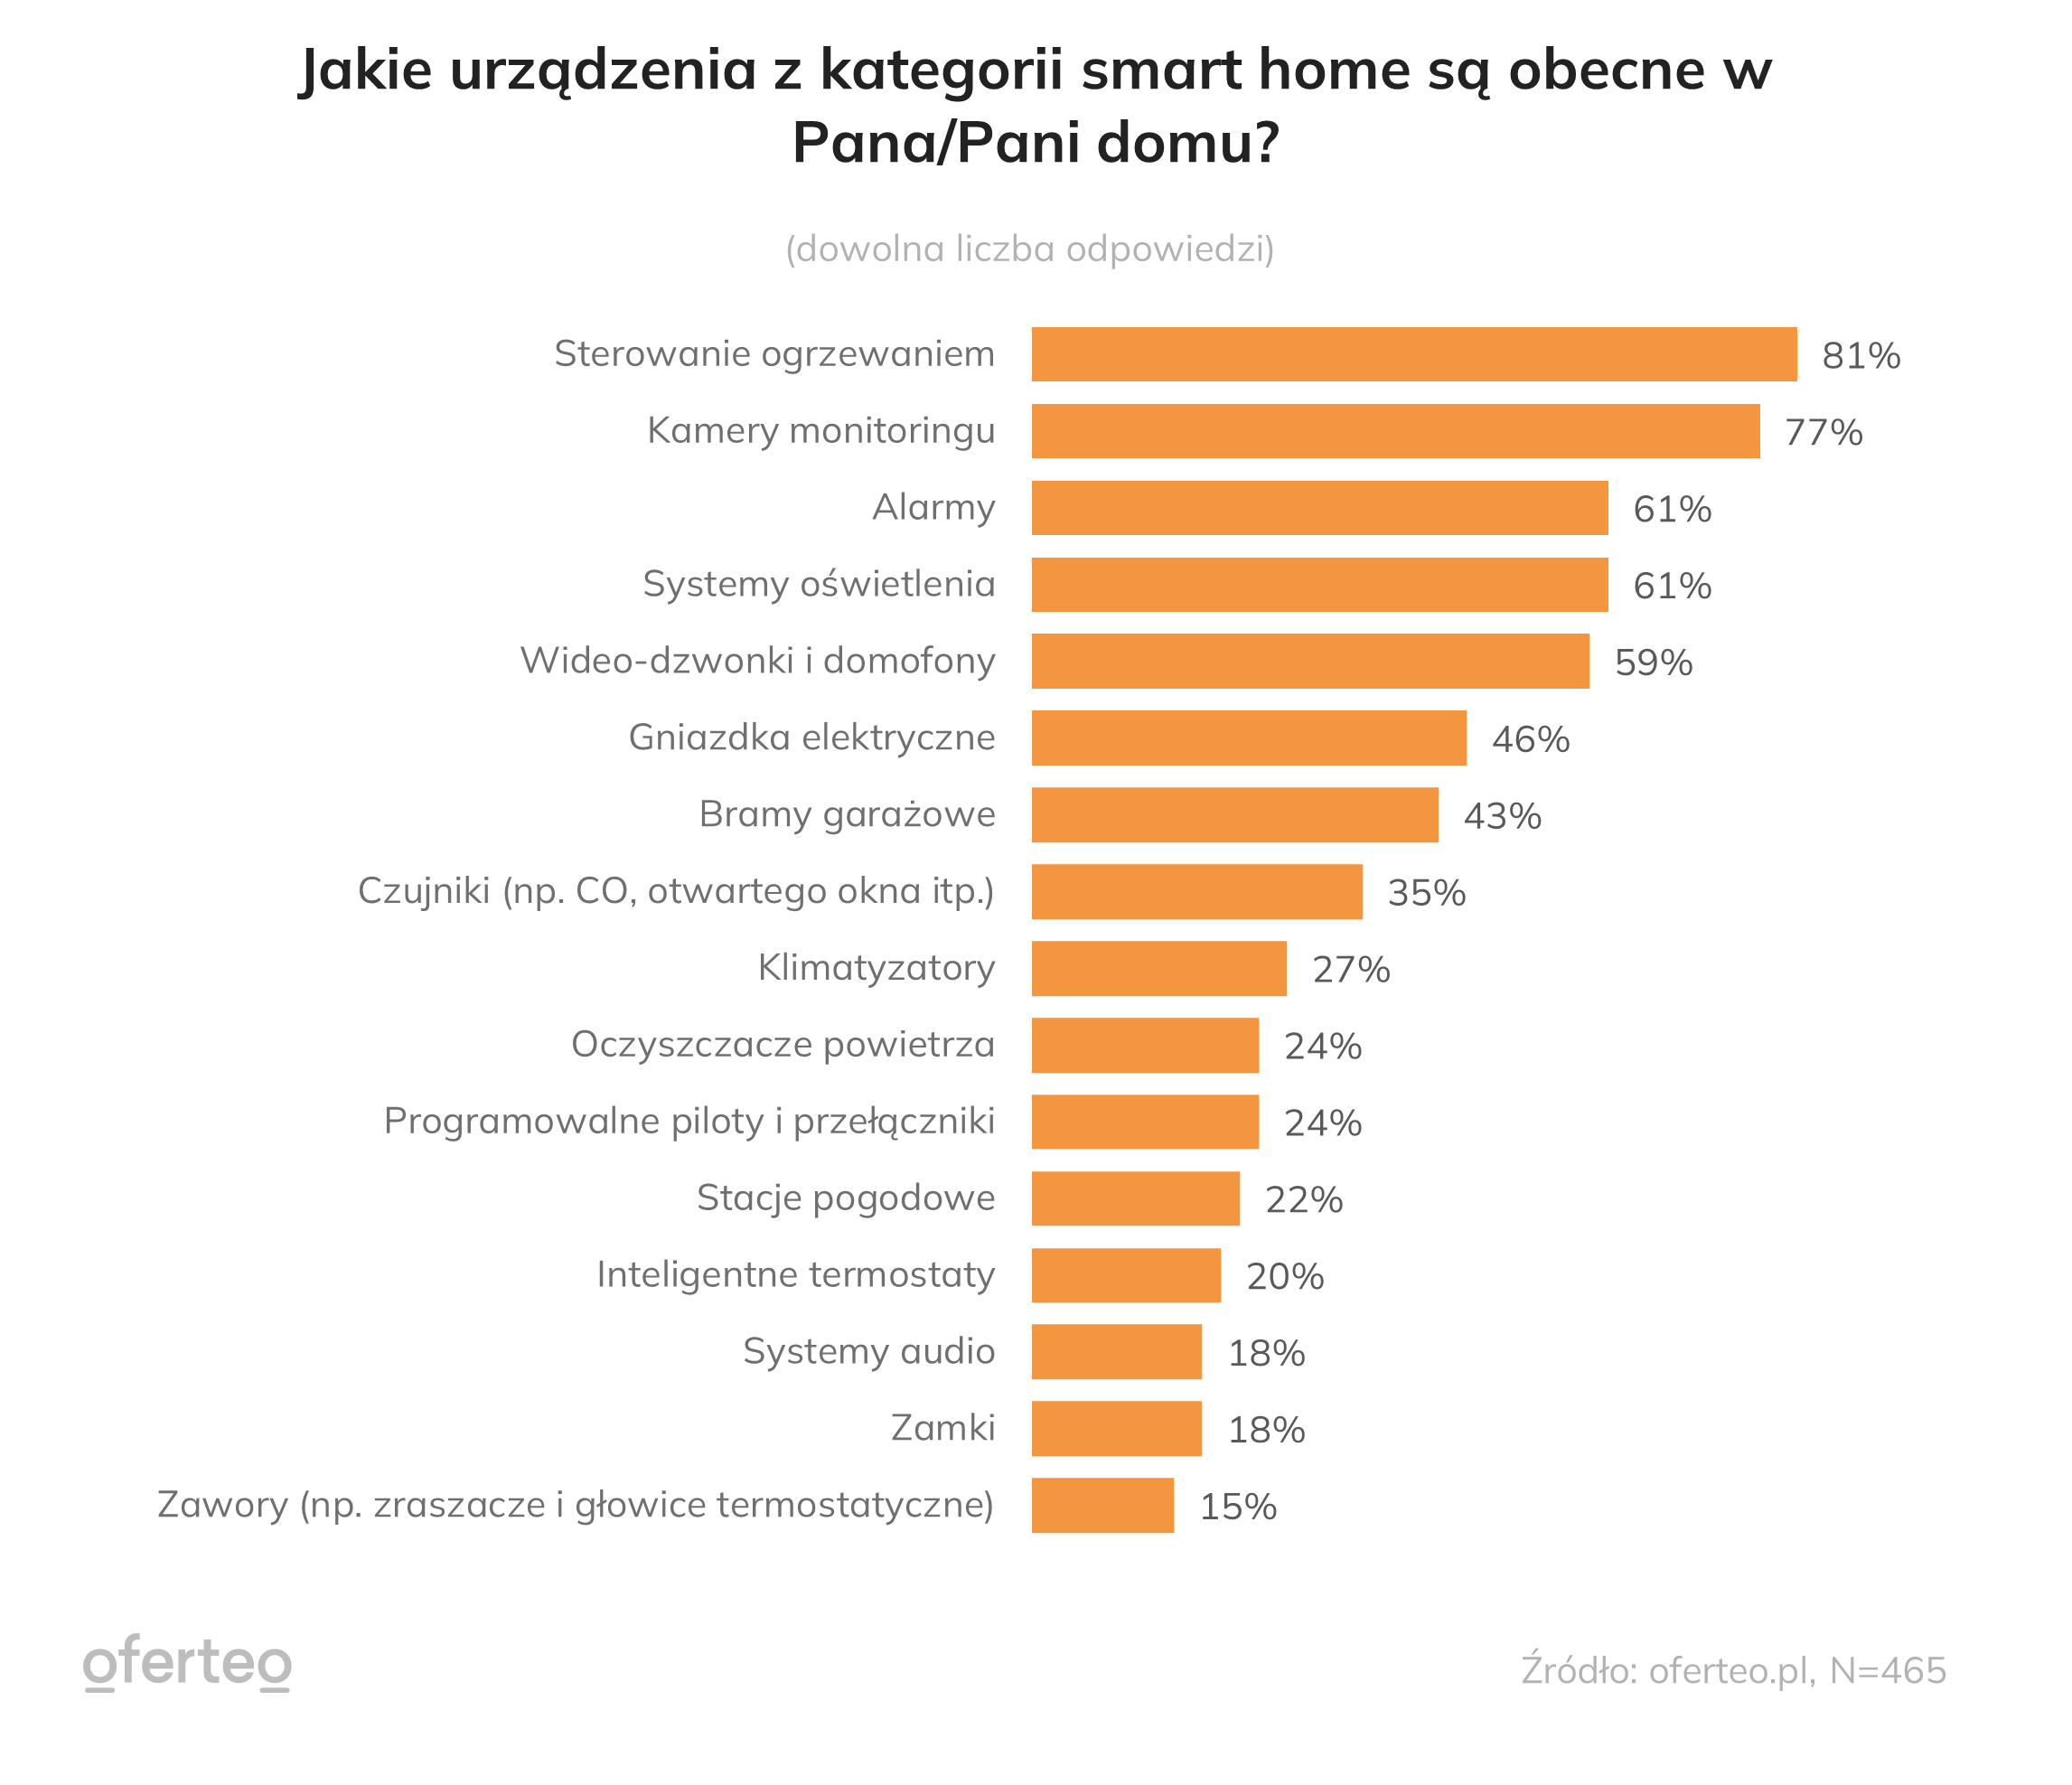 Urządzenia smart home, które wdrażane są w nowo budowanych domach w Polsce (źródło: Oferteo.pl)